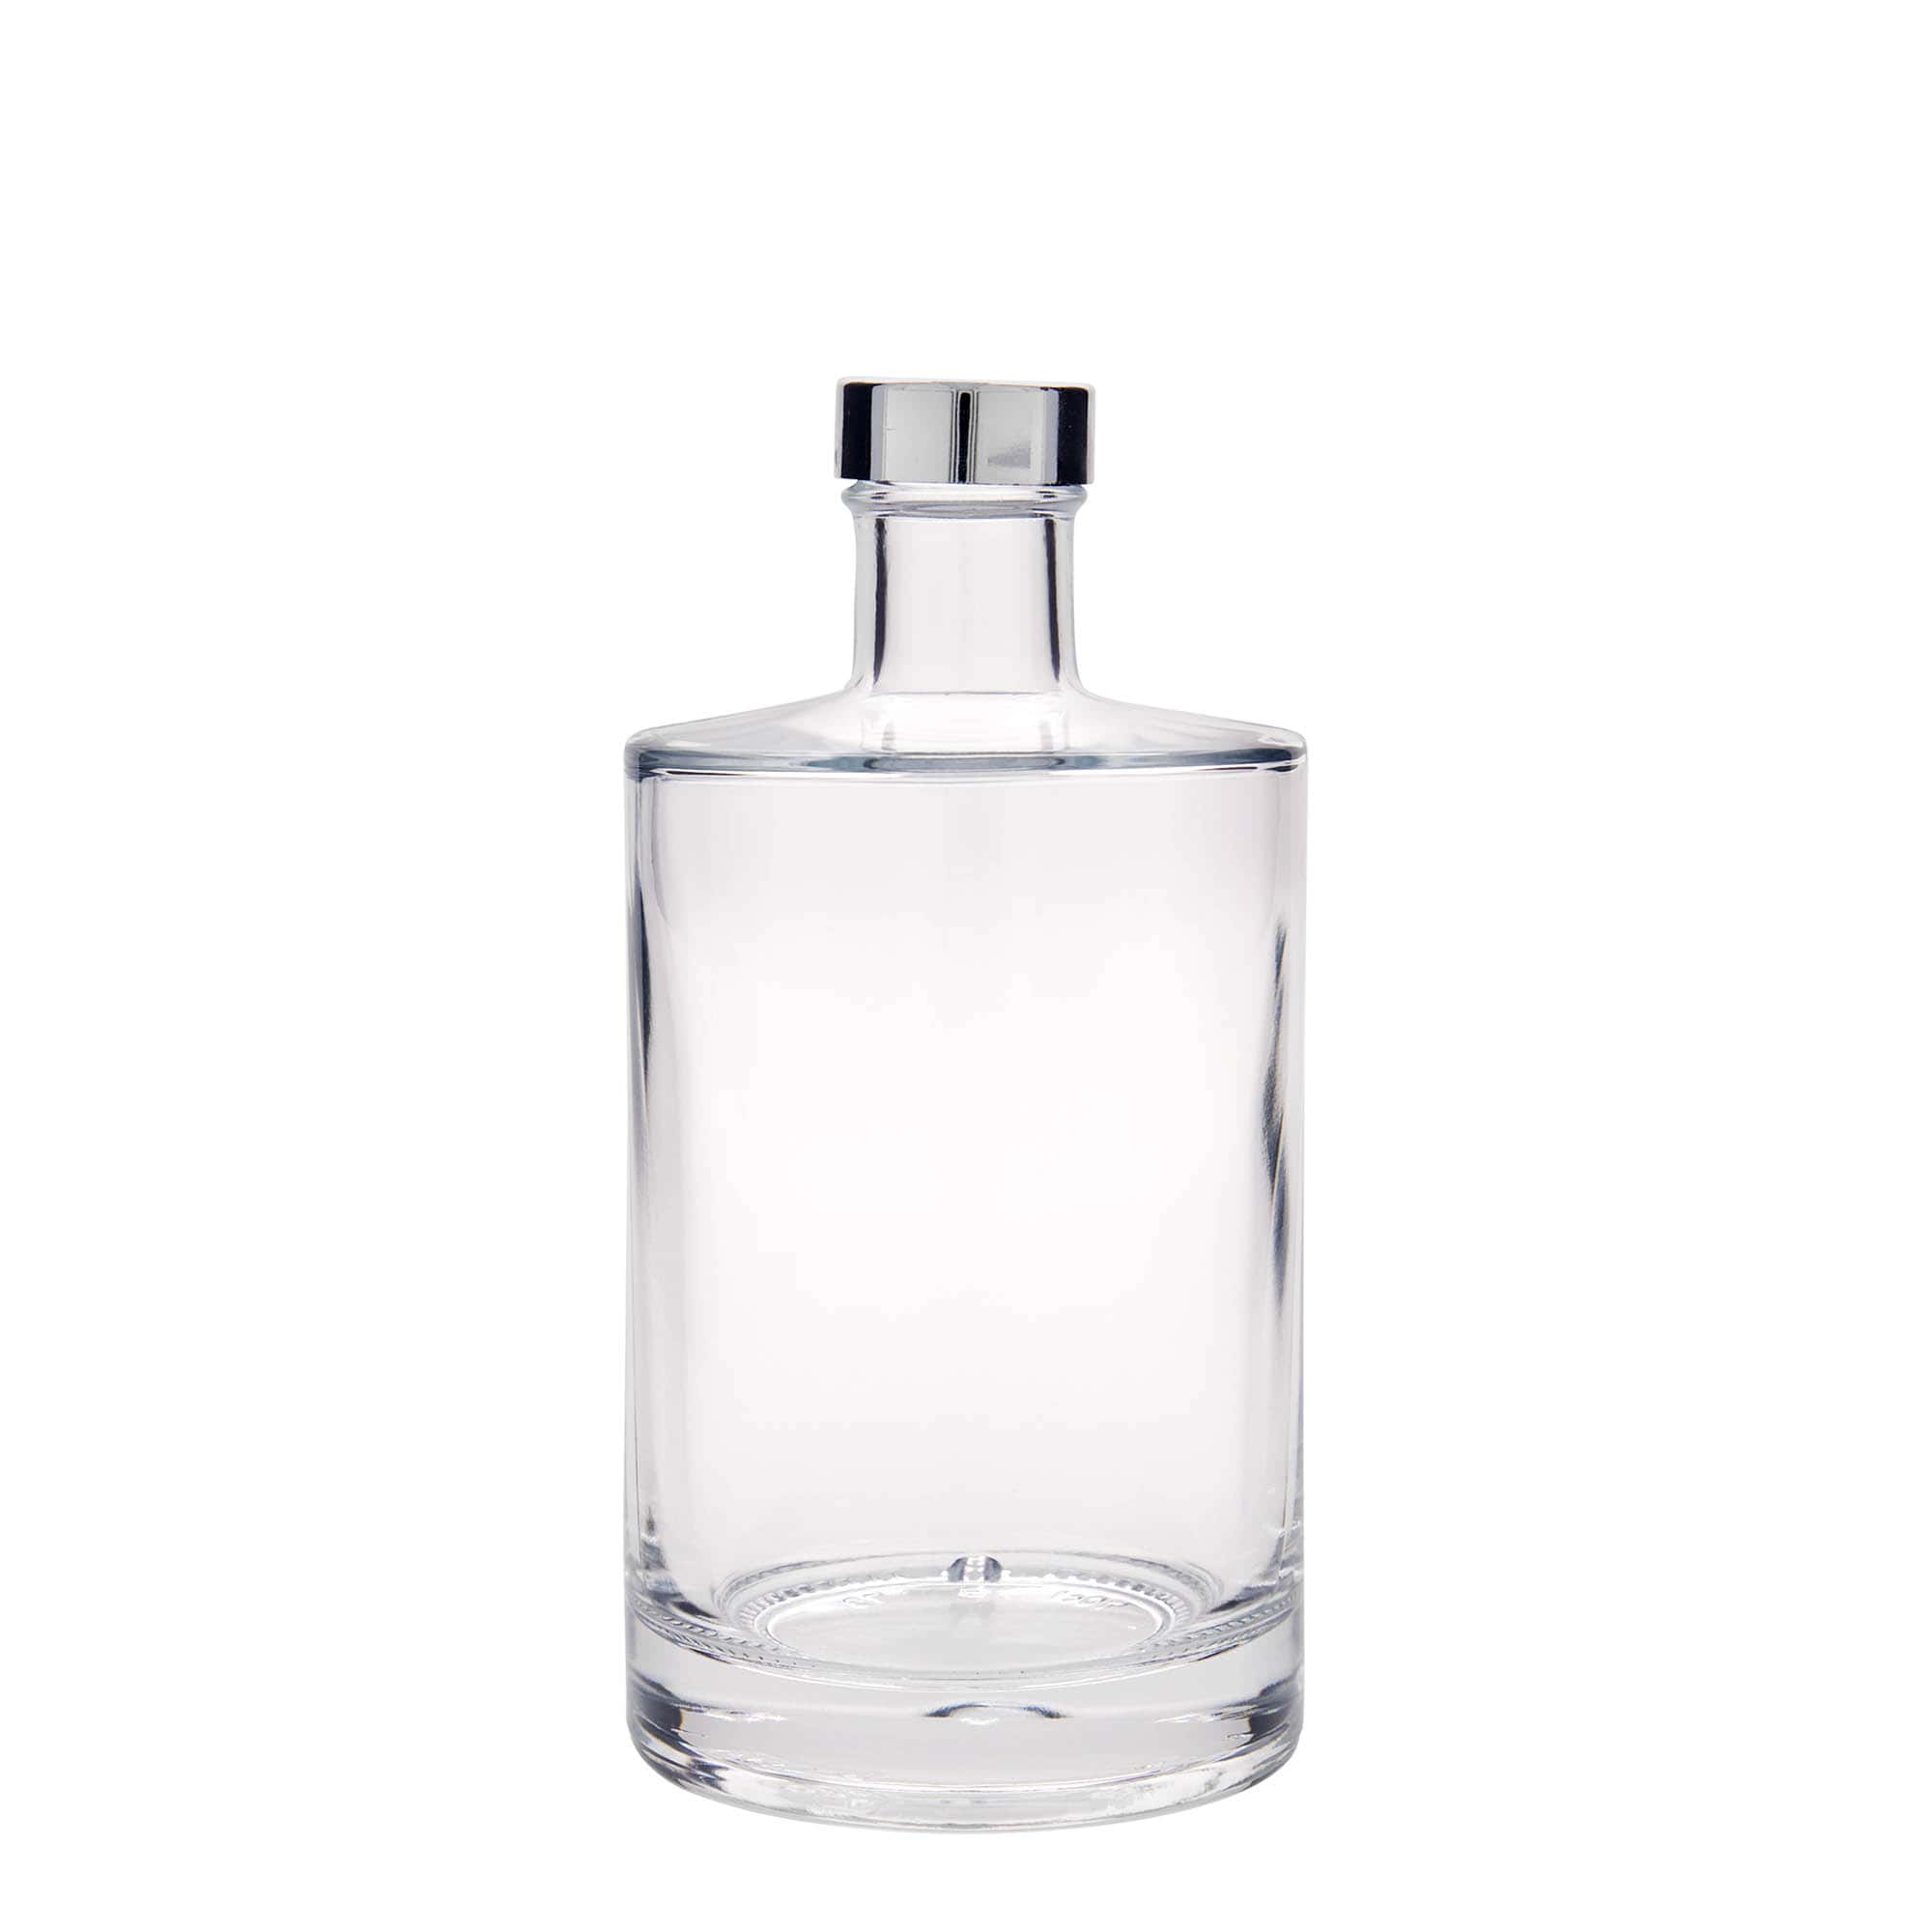 700 ml glass bottle 'Aventura', closure: GPI 33